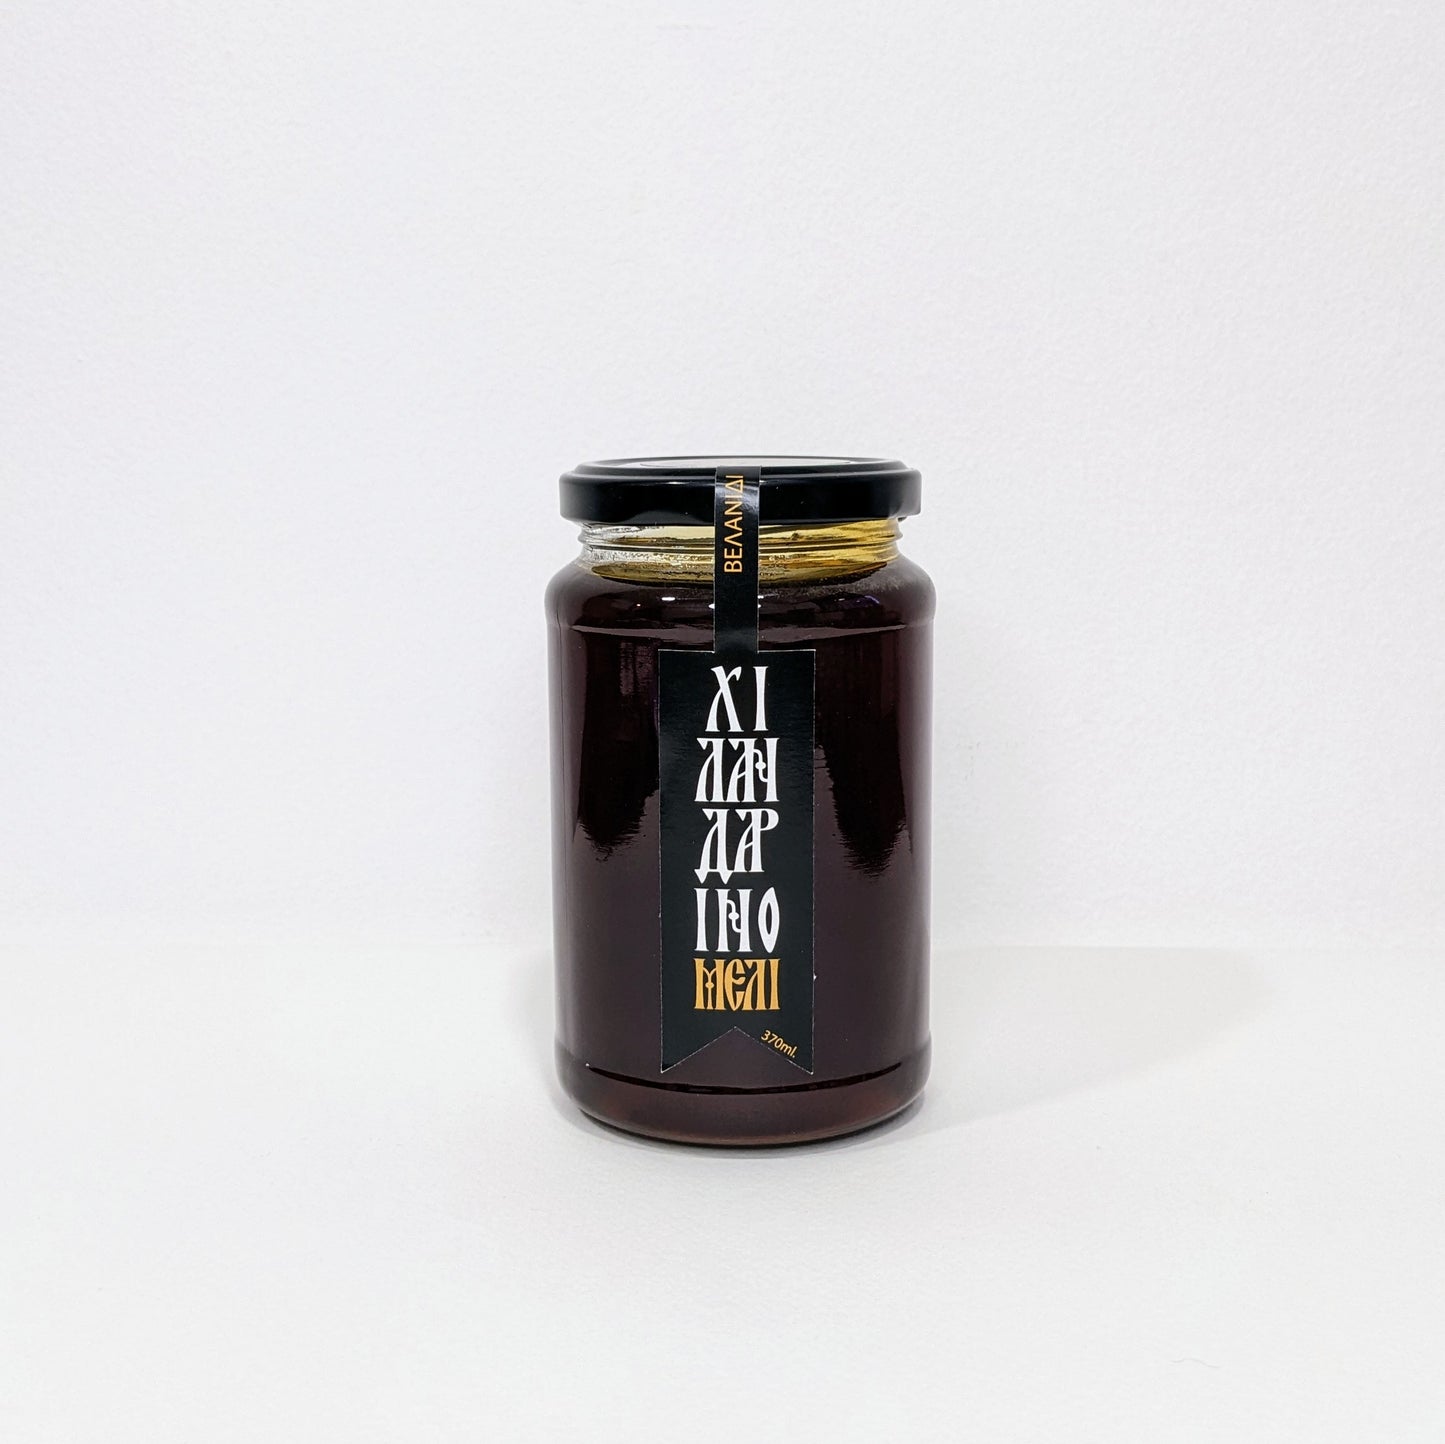 Αγνό μέλι Βελανίδι από την Ι.Μ. Χιλανδαρίου - 500γρ.